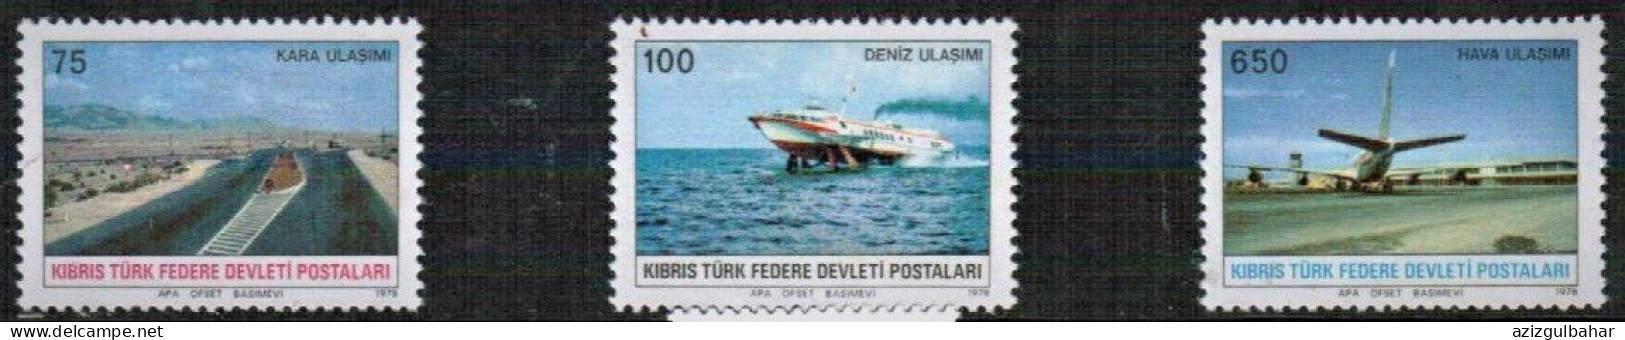 1977 - TRANSPORTATION -  TURKISH CYPRUS STAMPS - STAMPS - - Otros (Mar)